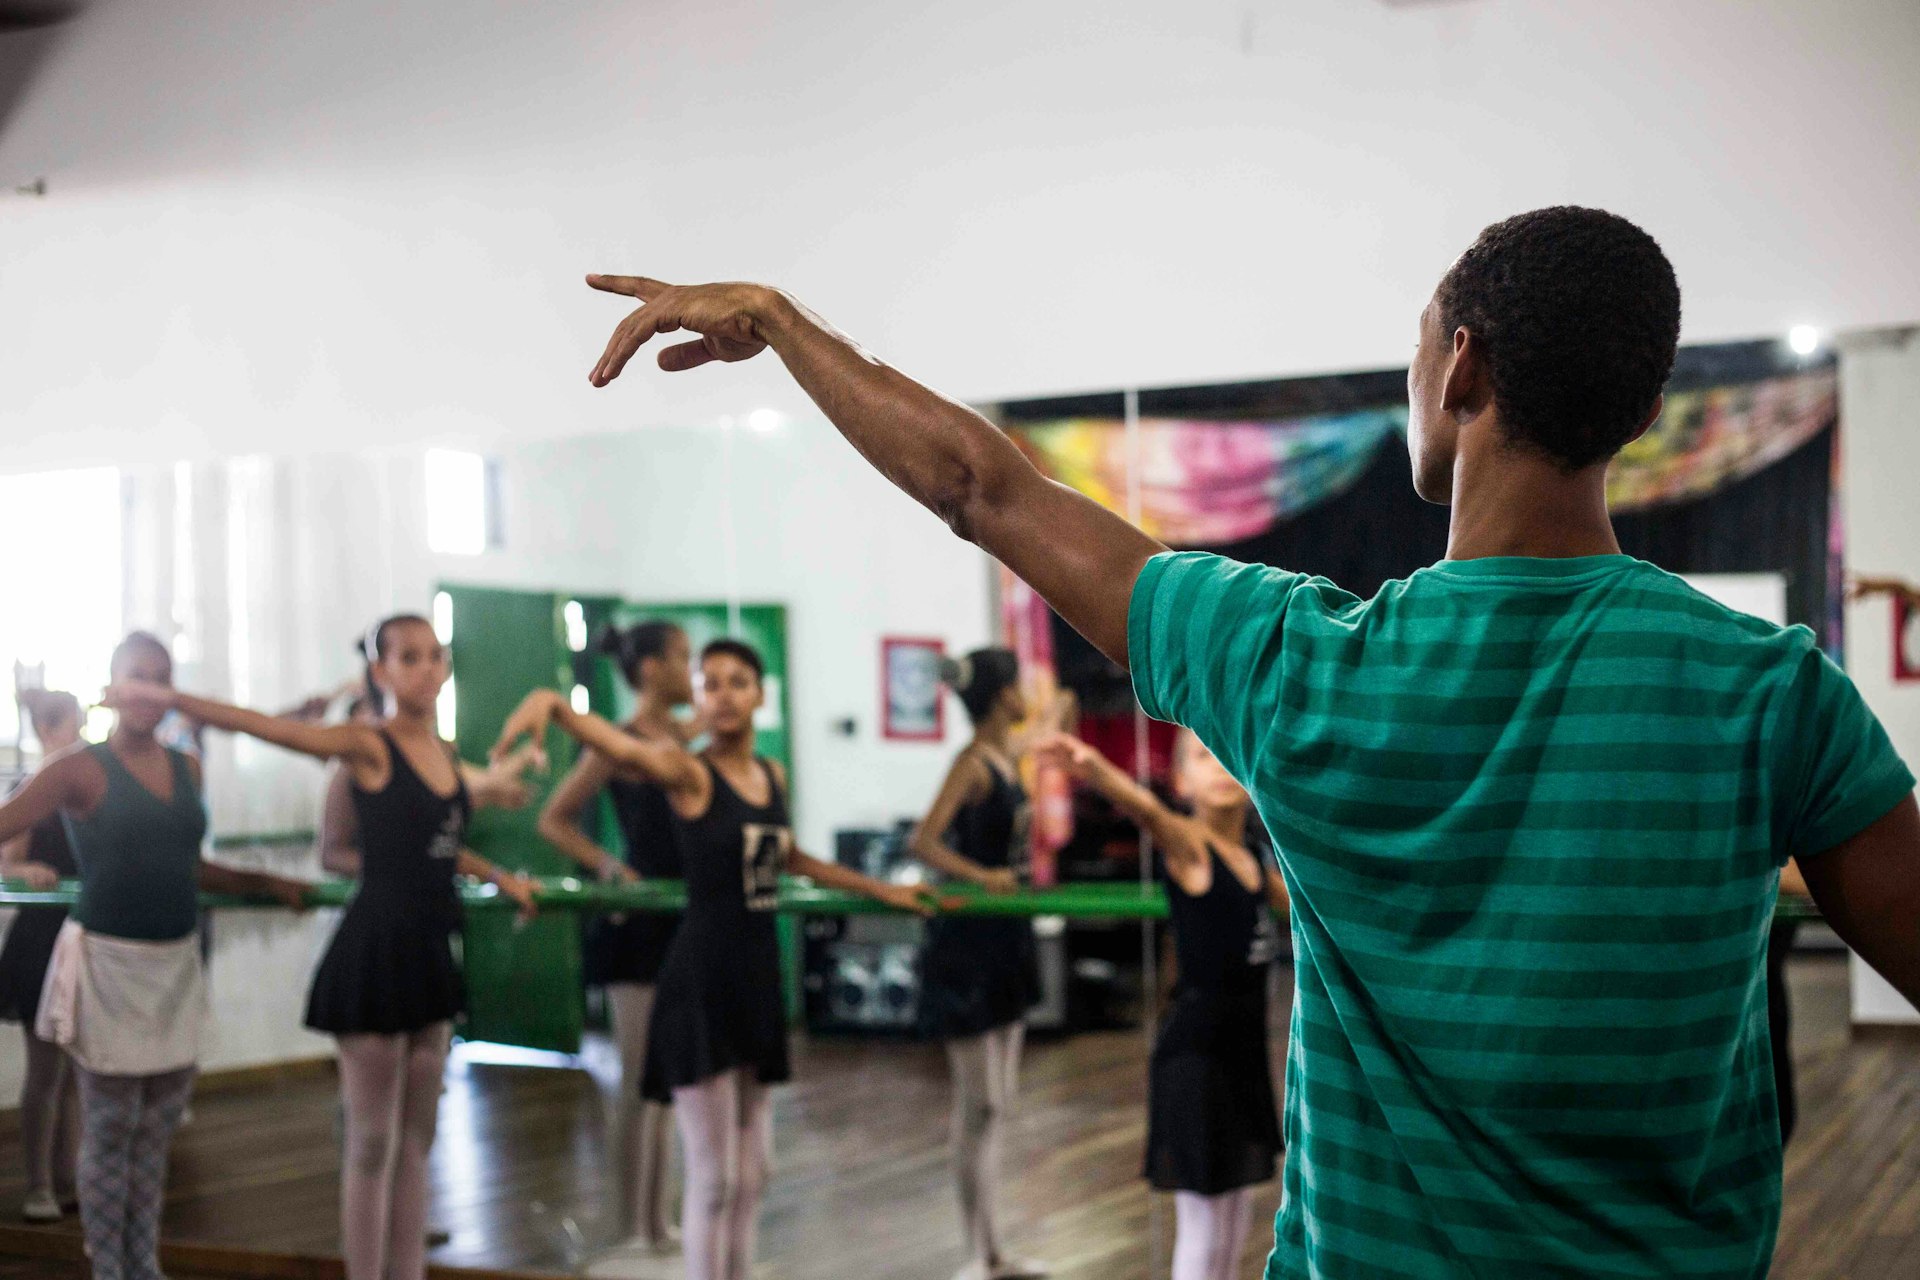 Bullets, ballet and building dreams in Rio’s favelas